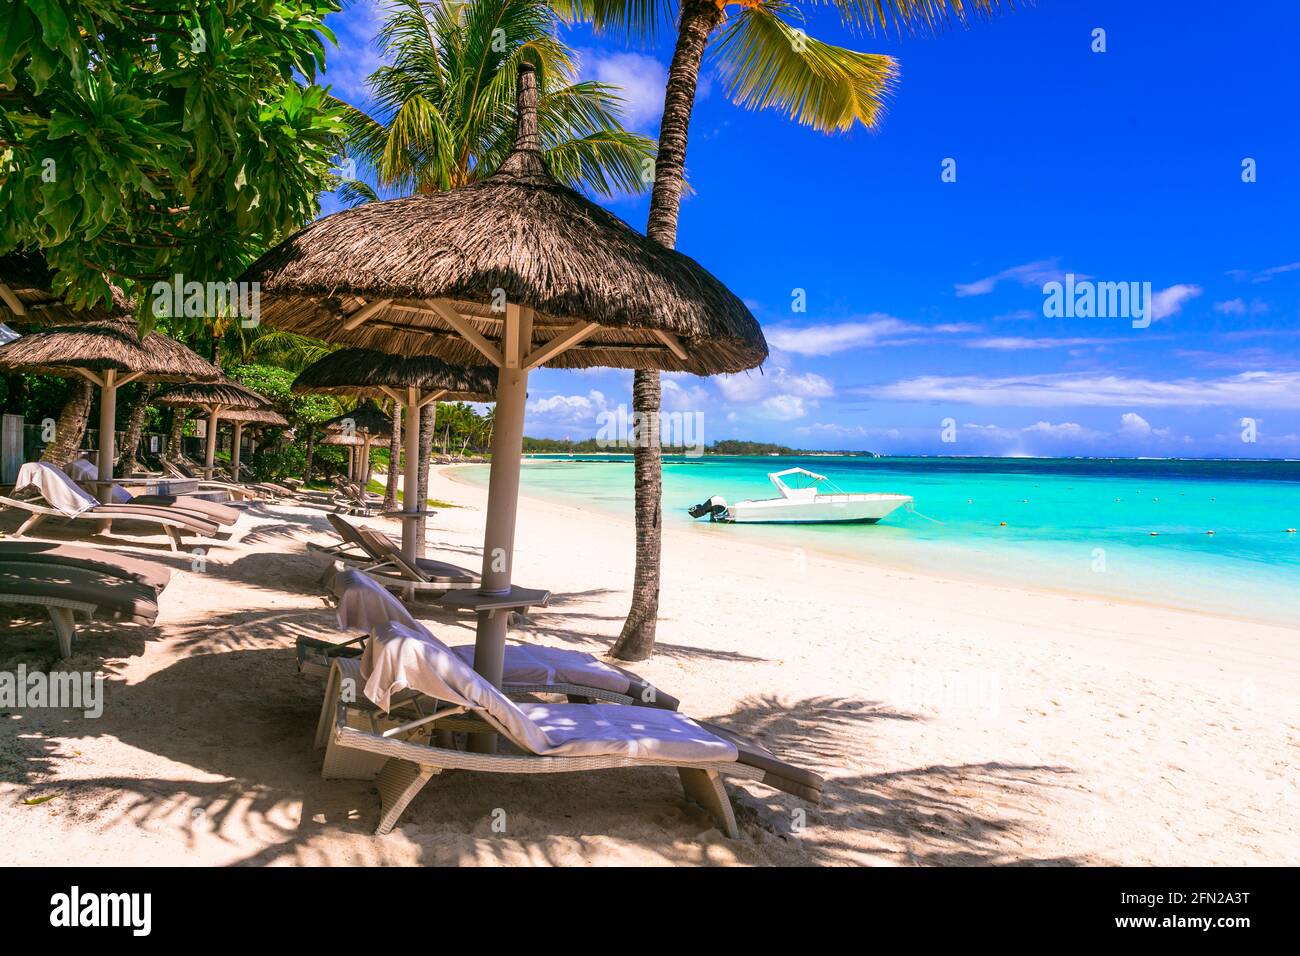 Vacanza tropicale, rilassante scenario balneare con sedie a sdraio sotto palme e ombrelloni Foto Stock